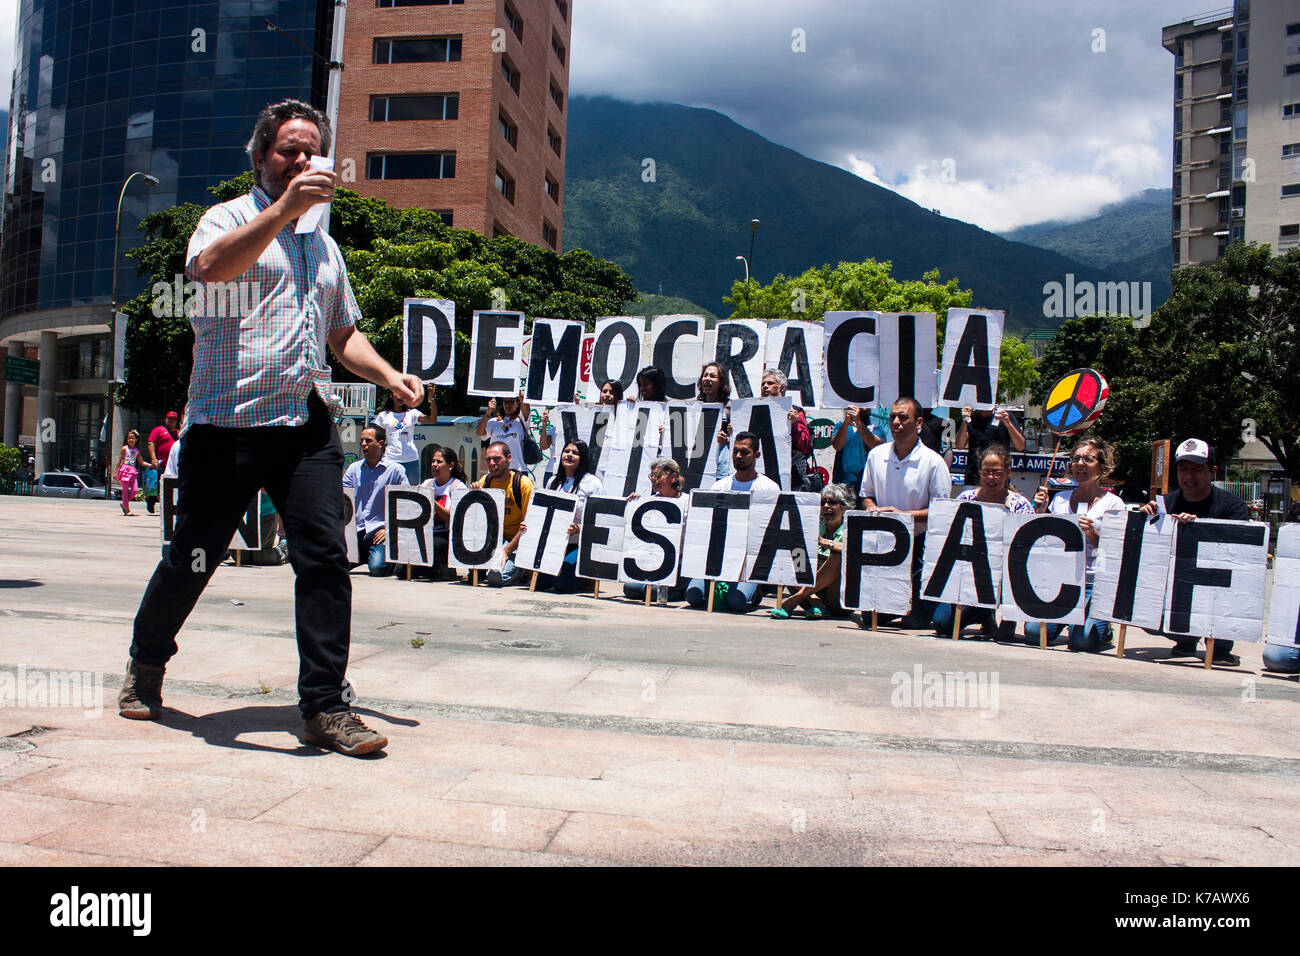 Caracas, Venezuela, 15. September 2017. Eine Zivilgesellschaft Gruppe bekannt als Dale letra (Lyrik) in einem friedlichen Protest gegen die autoritäre Politik der venezolanischen Regierung teilgenommen. Agustin Garcia/alamy leben Nachrichten Stockfoto